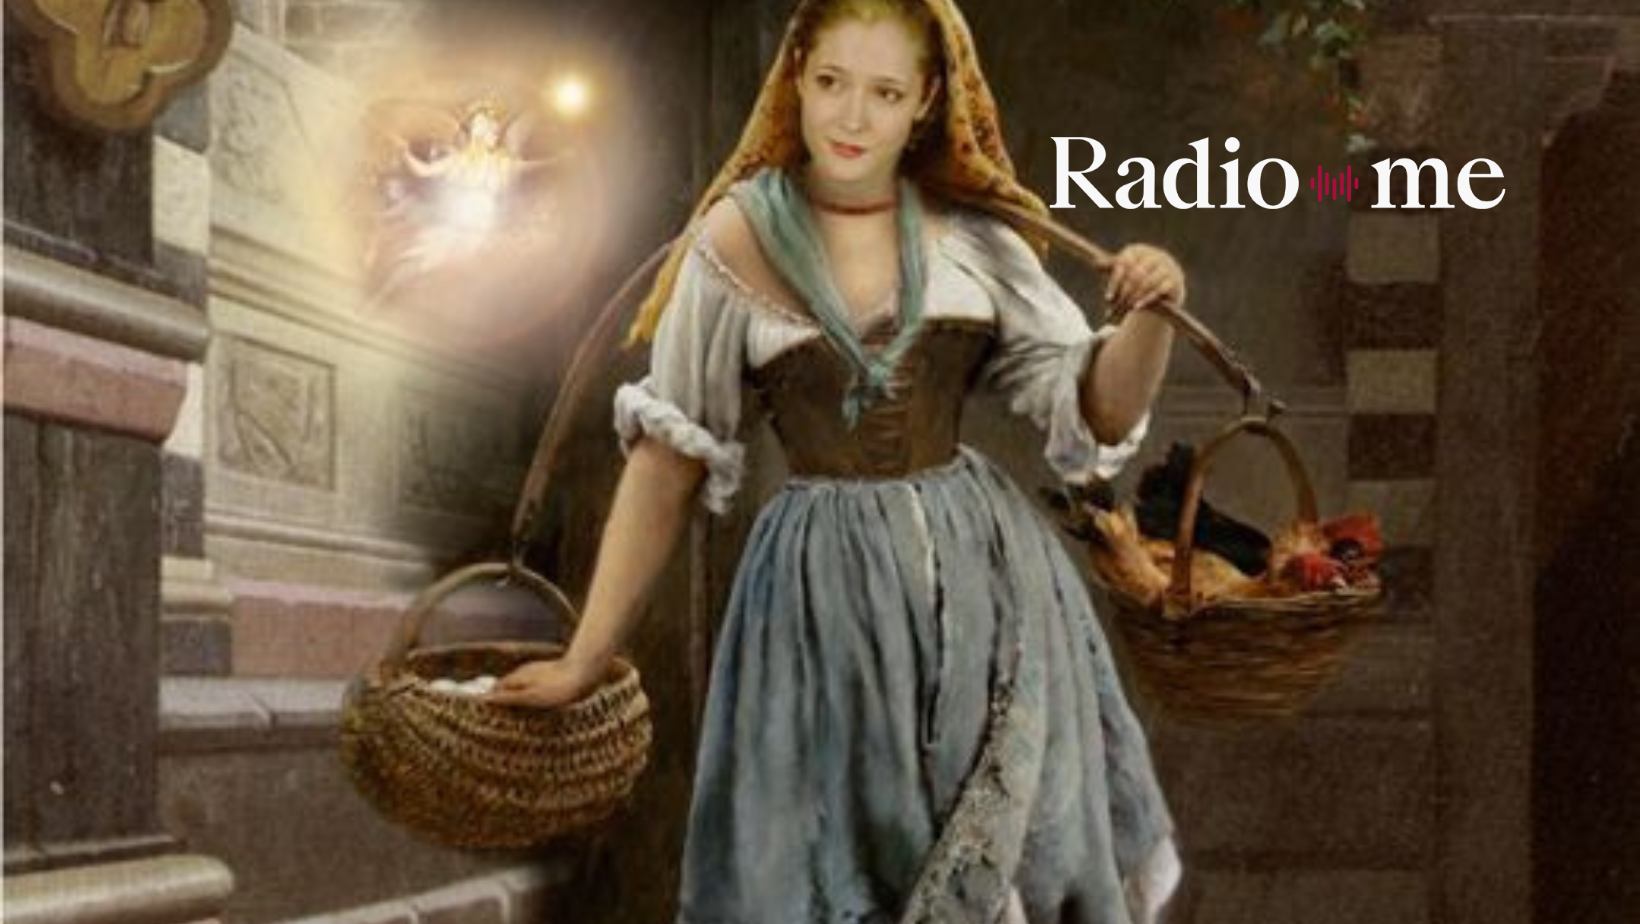 Με μια βαλίτσα παραμύθια: Η φτωχιά κόρη με τη χρυσή μοίρα - Radiome.gr |  Ραδιοφωνικός σταθμός